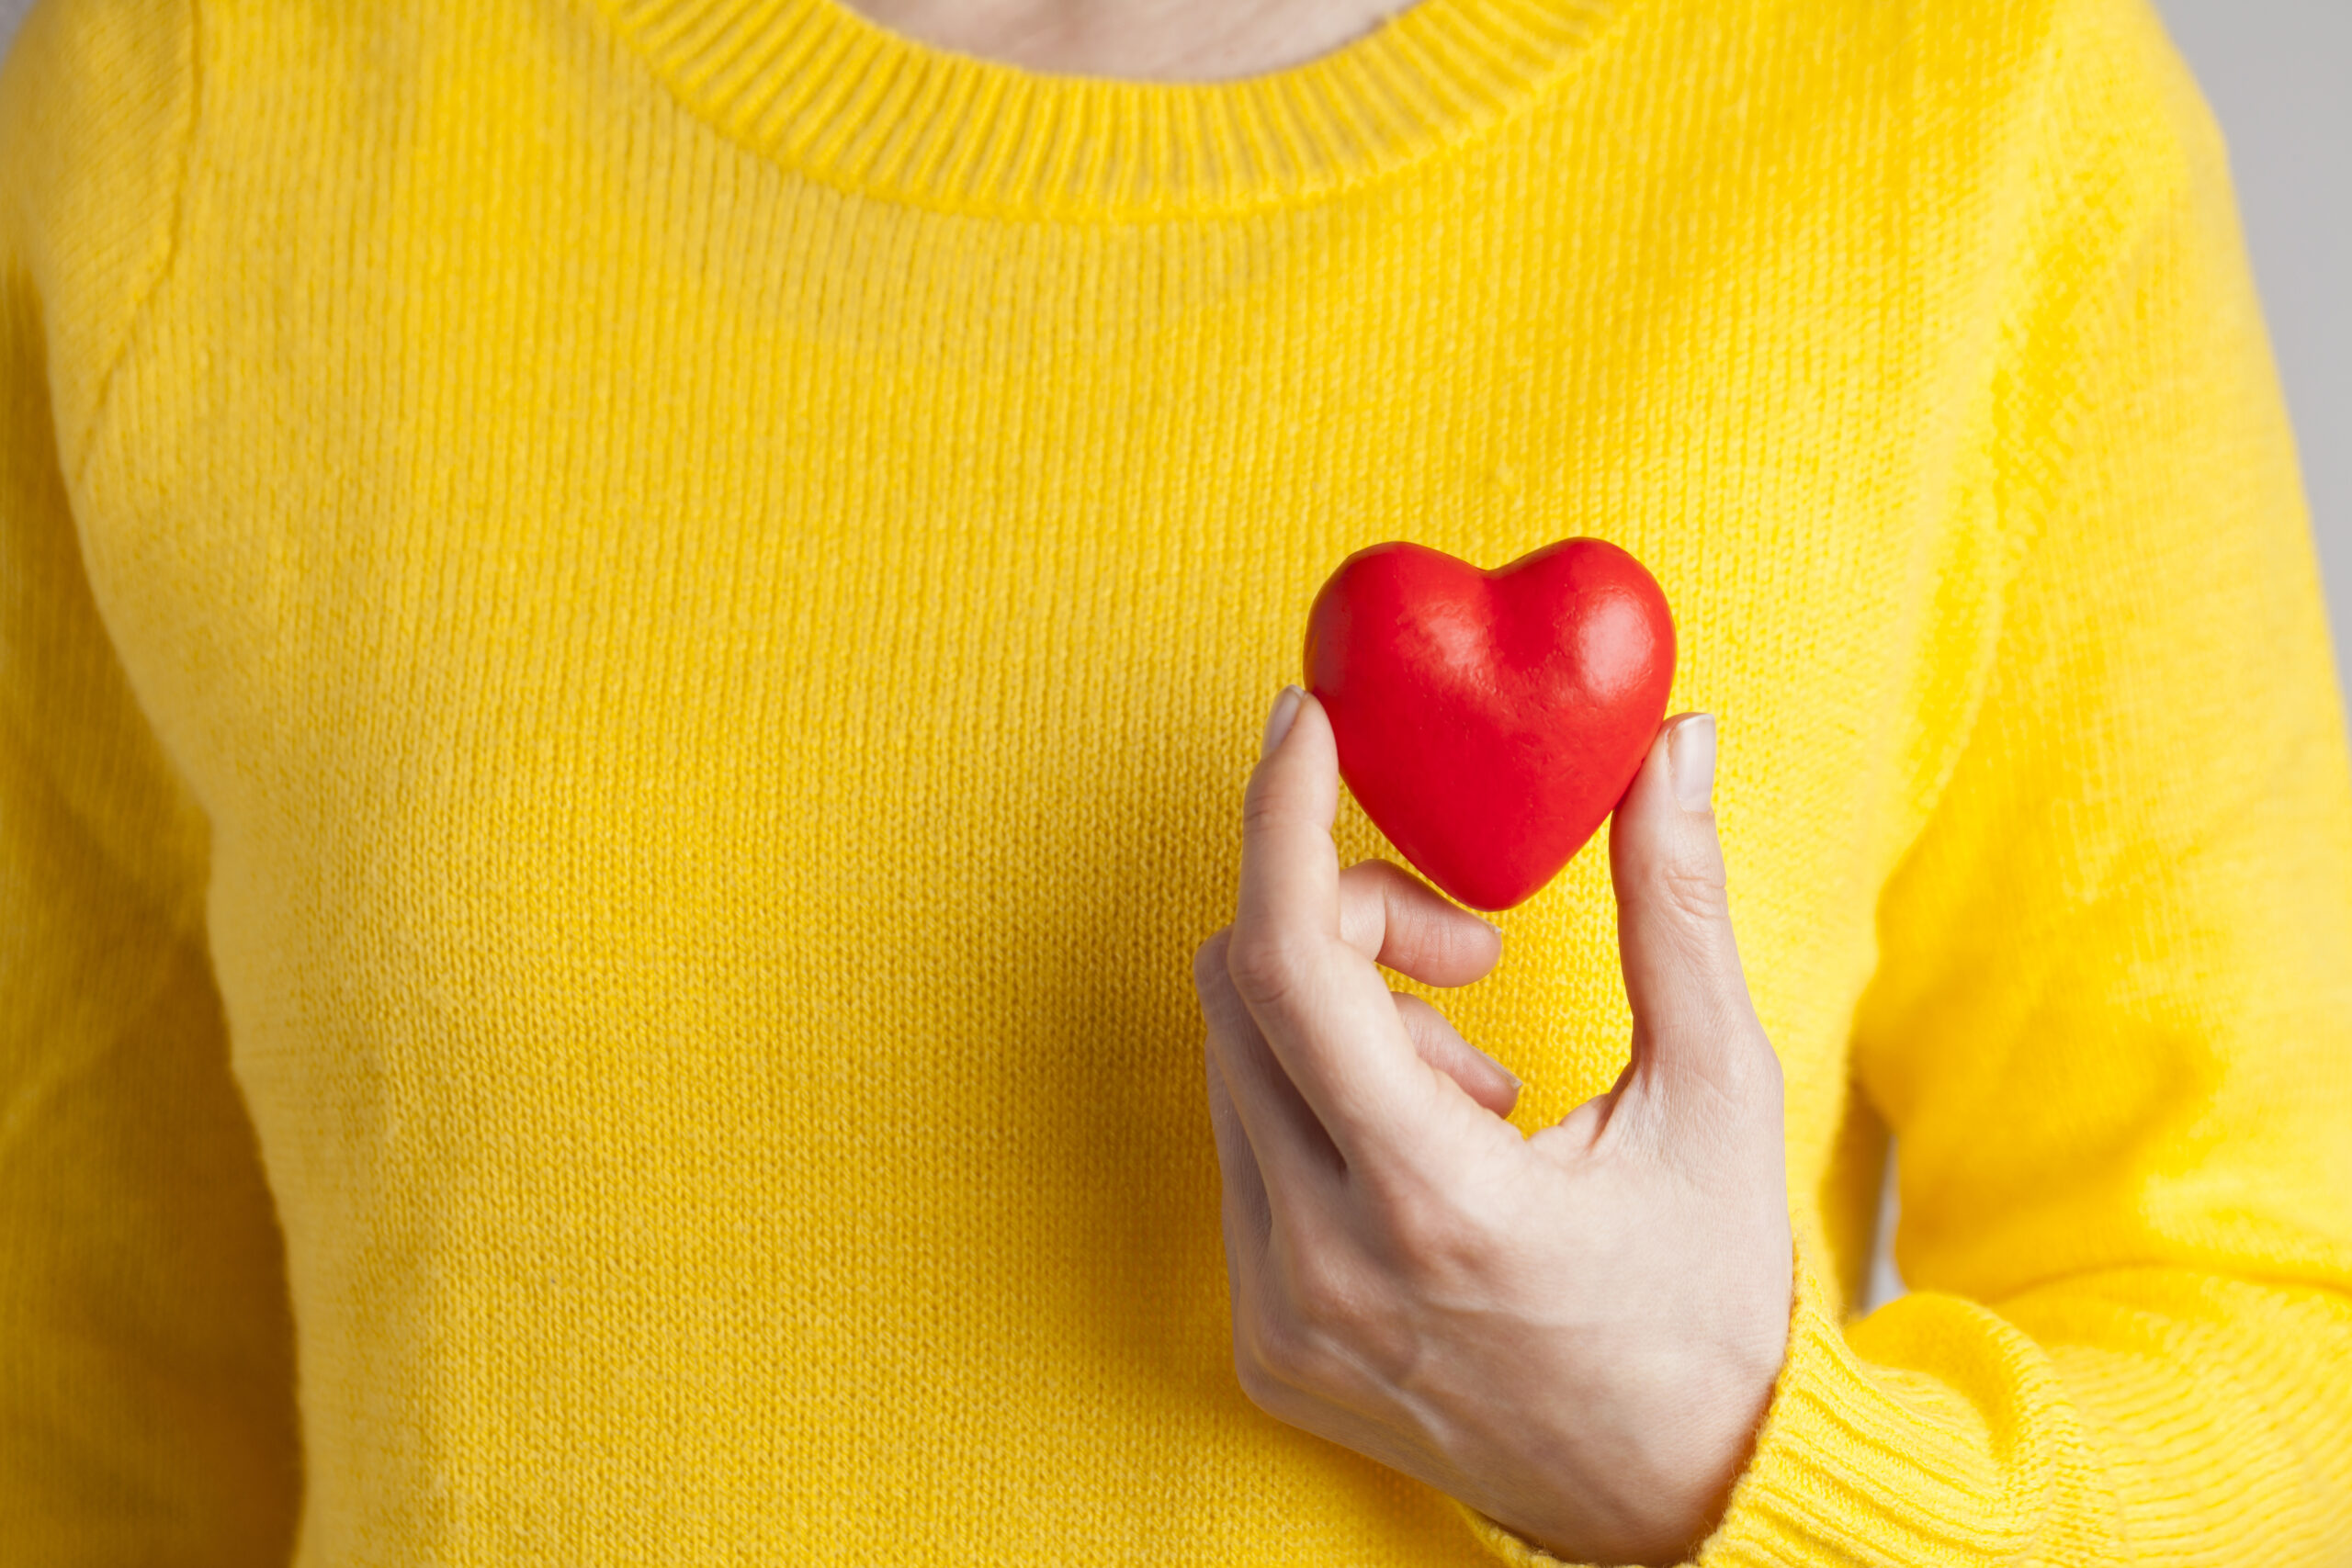 Närbild på kvinnlig hand som håller i litet rött gummihjärta mot en gul tröja